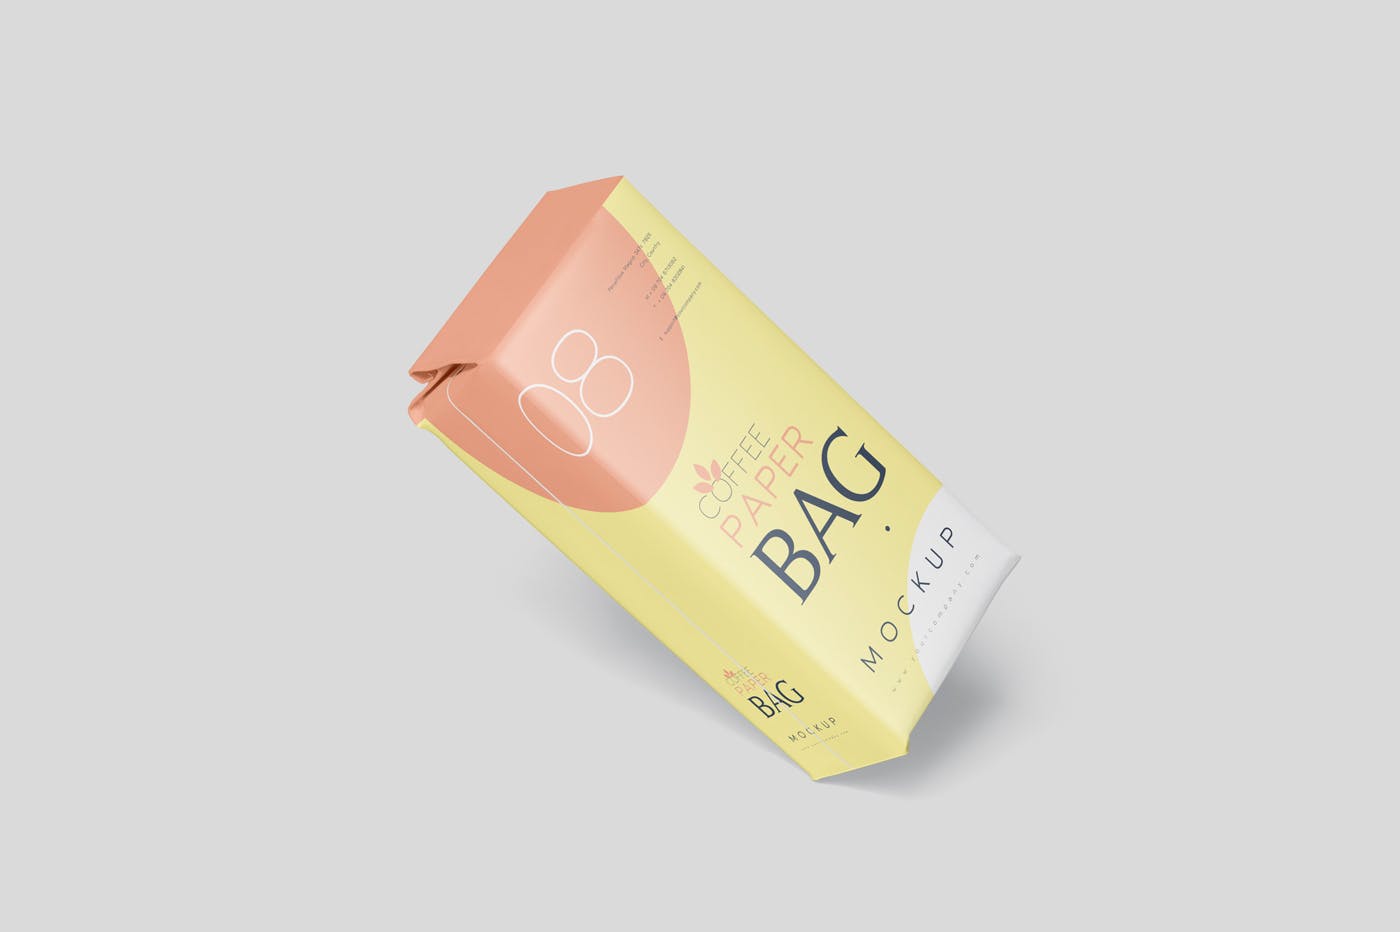 咖啡粉/咖啡豆纸袋包装素材库精选模板 Coffee Paper Bag Mockup Set插图(4)